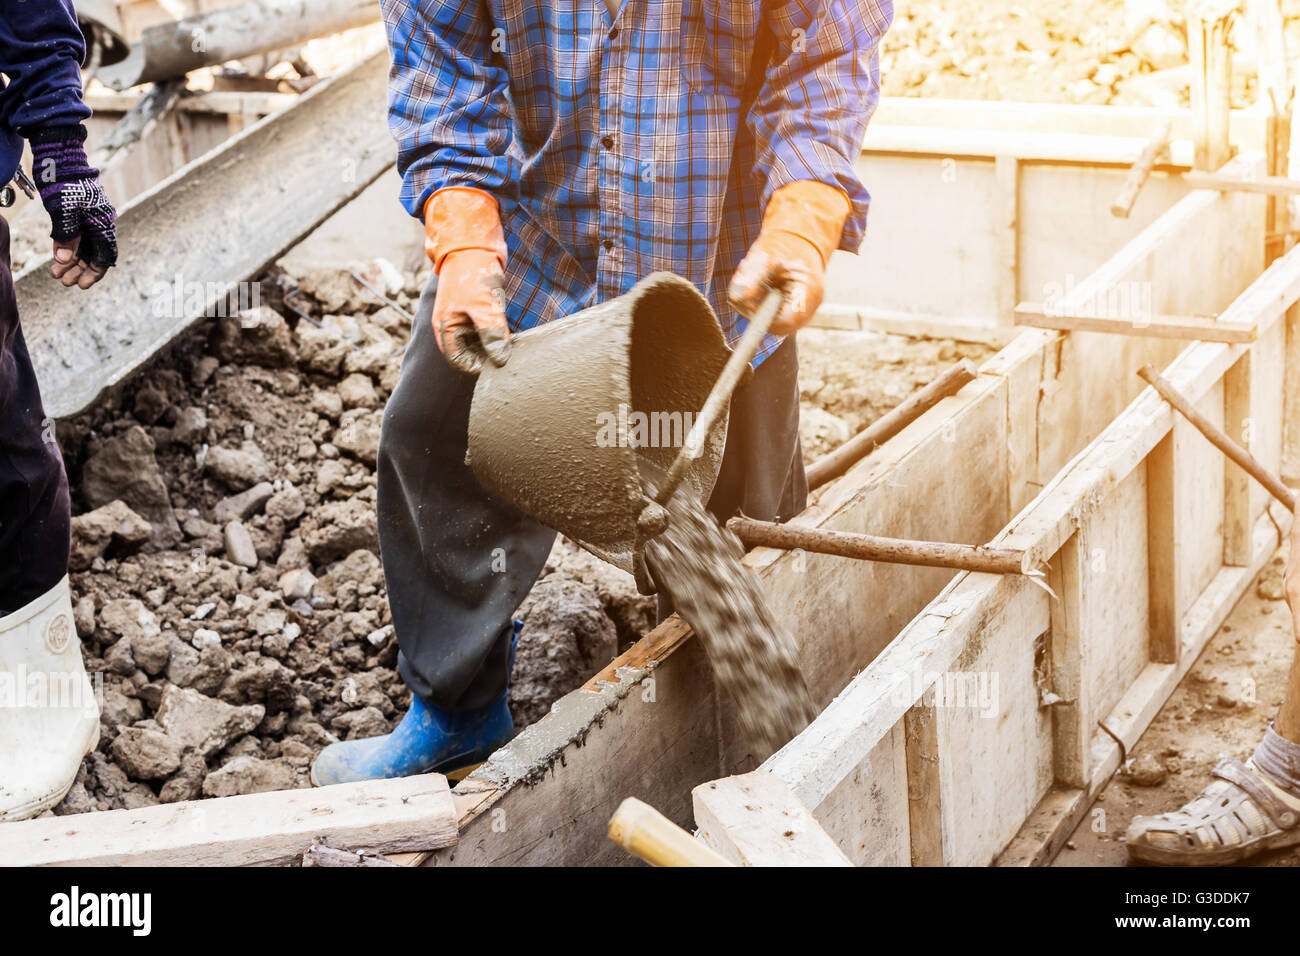 Arbeiter mischen Zement-Mörtel-Pflaster für Konstruktion mit Vintage-Ton  Stockfotografie - Alamy